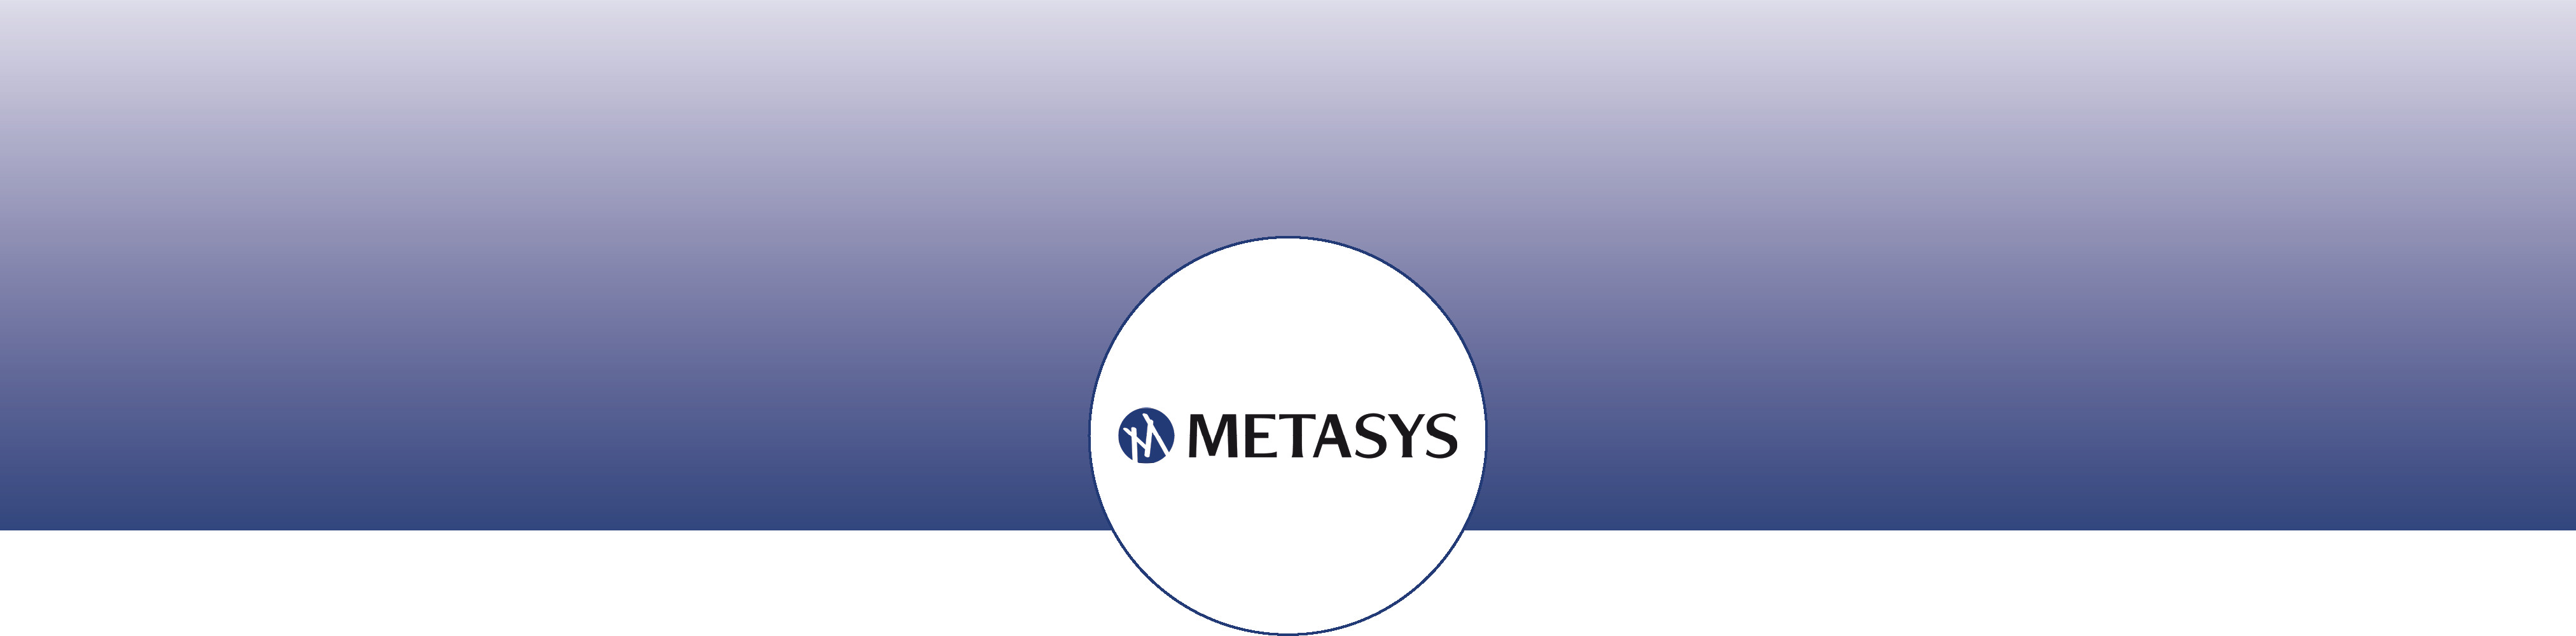 banner_metasys